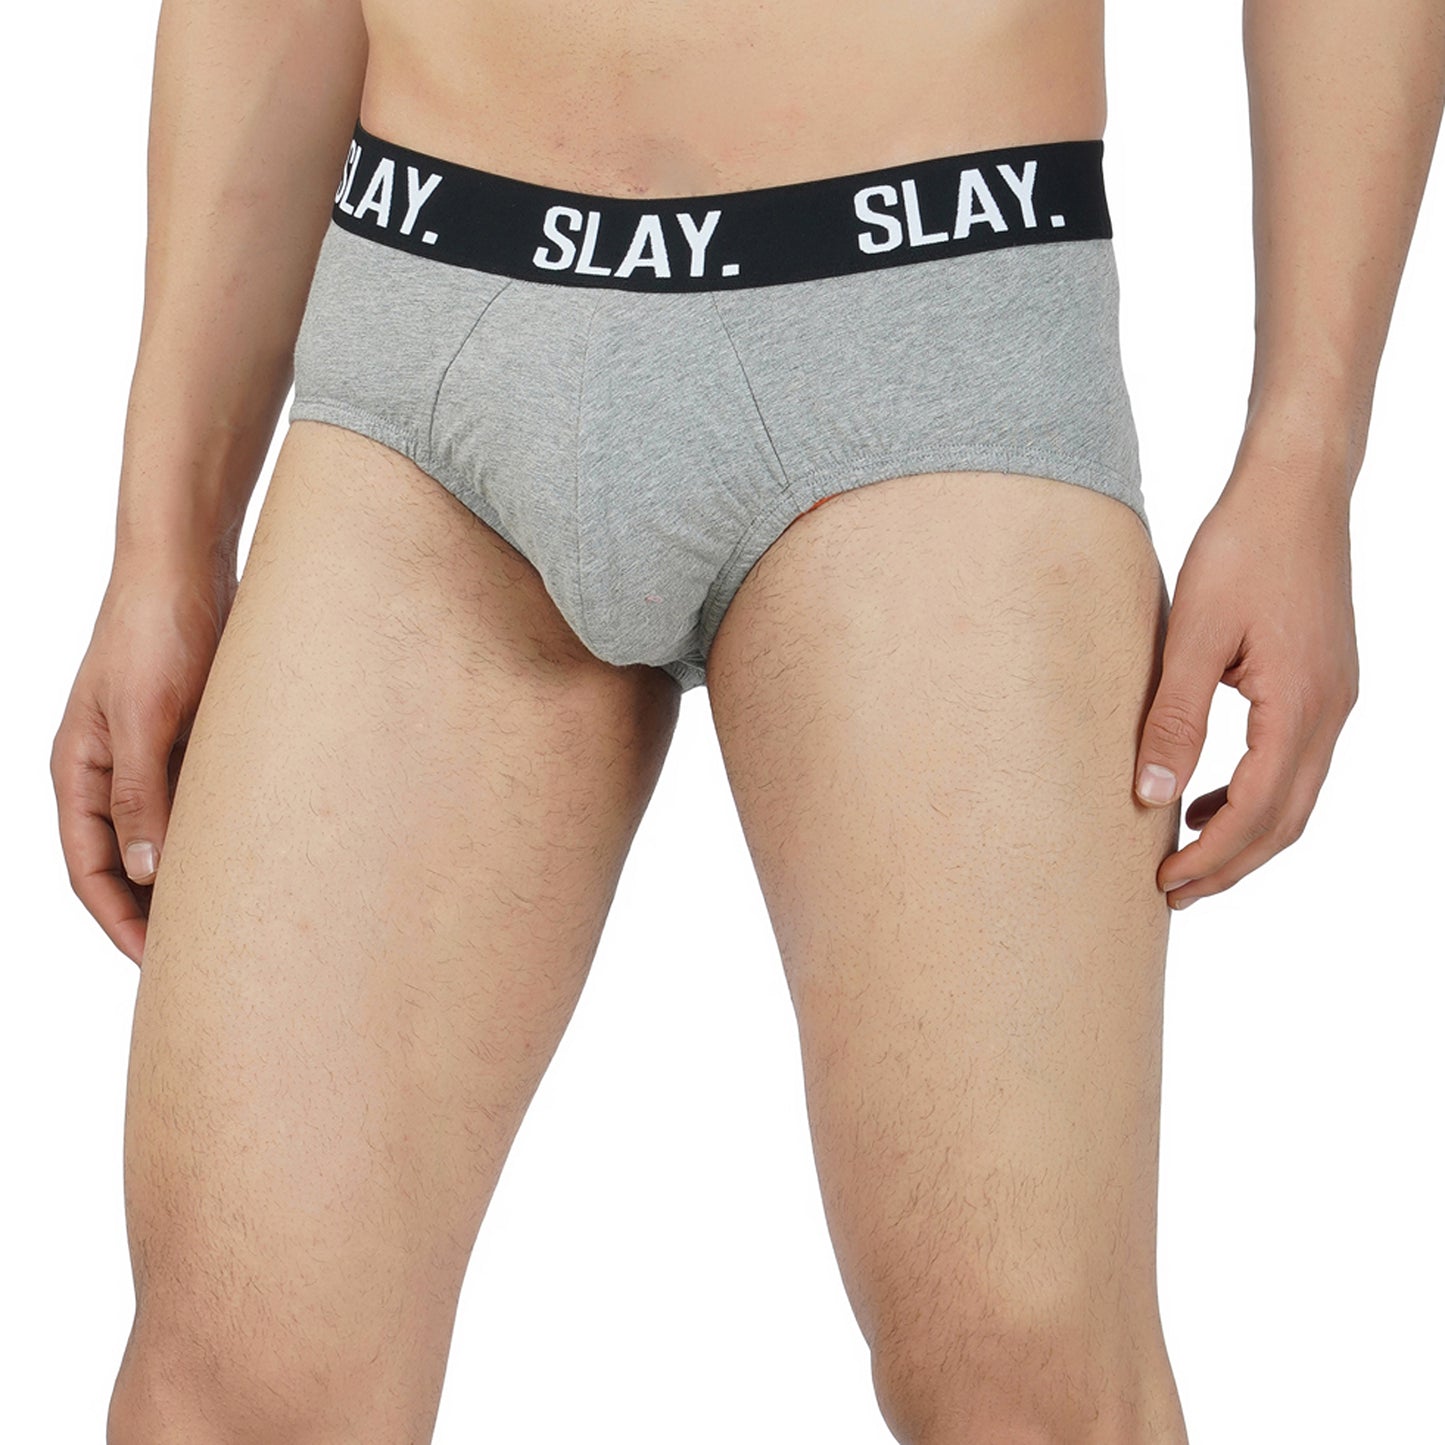 SLAY. Men's Grey Underwear Cotton Briefs